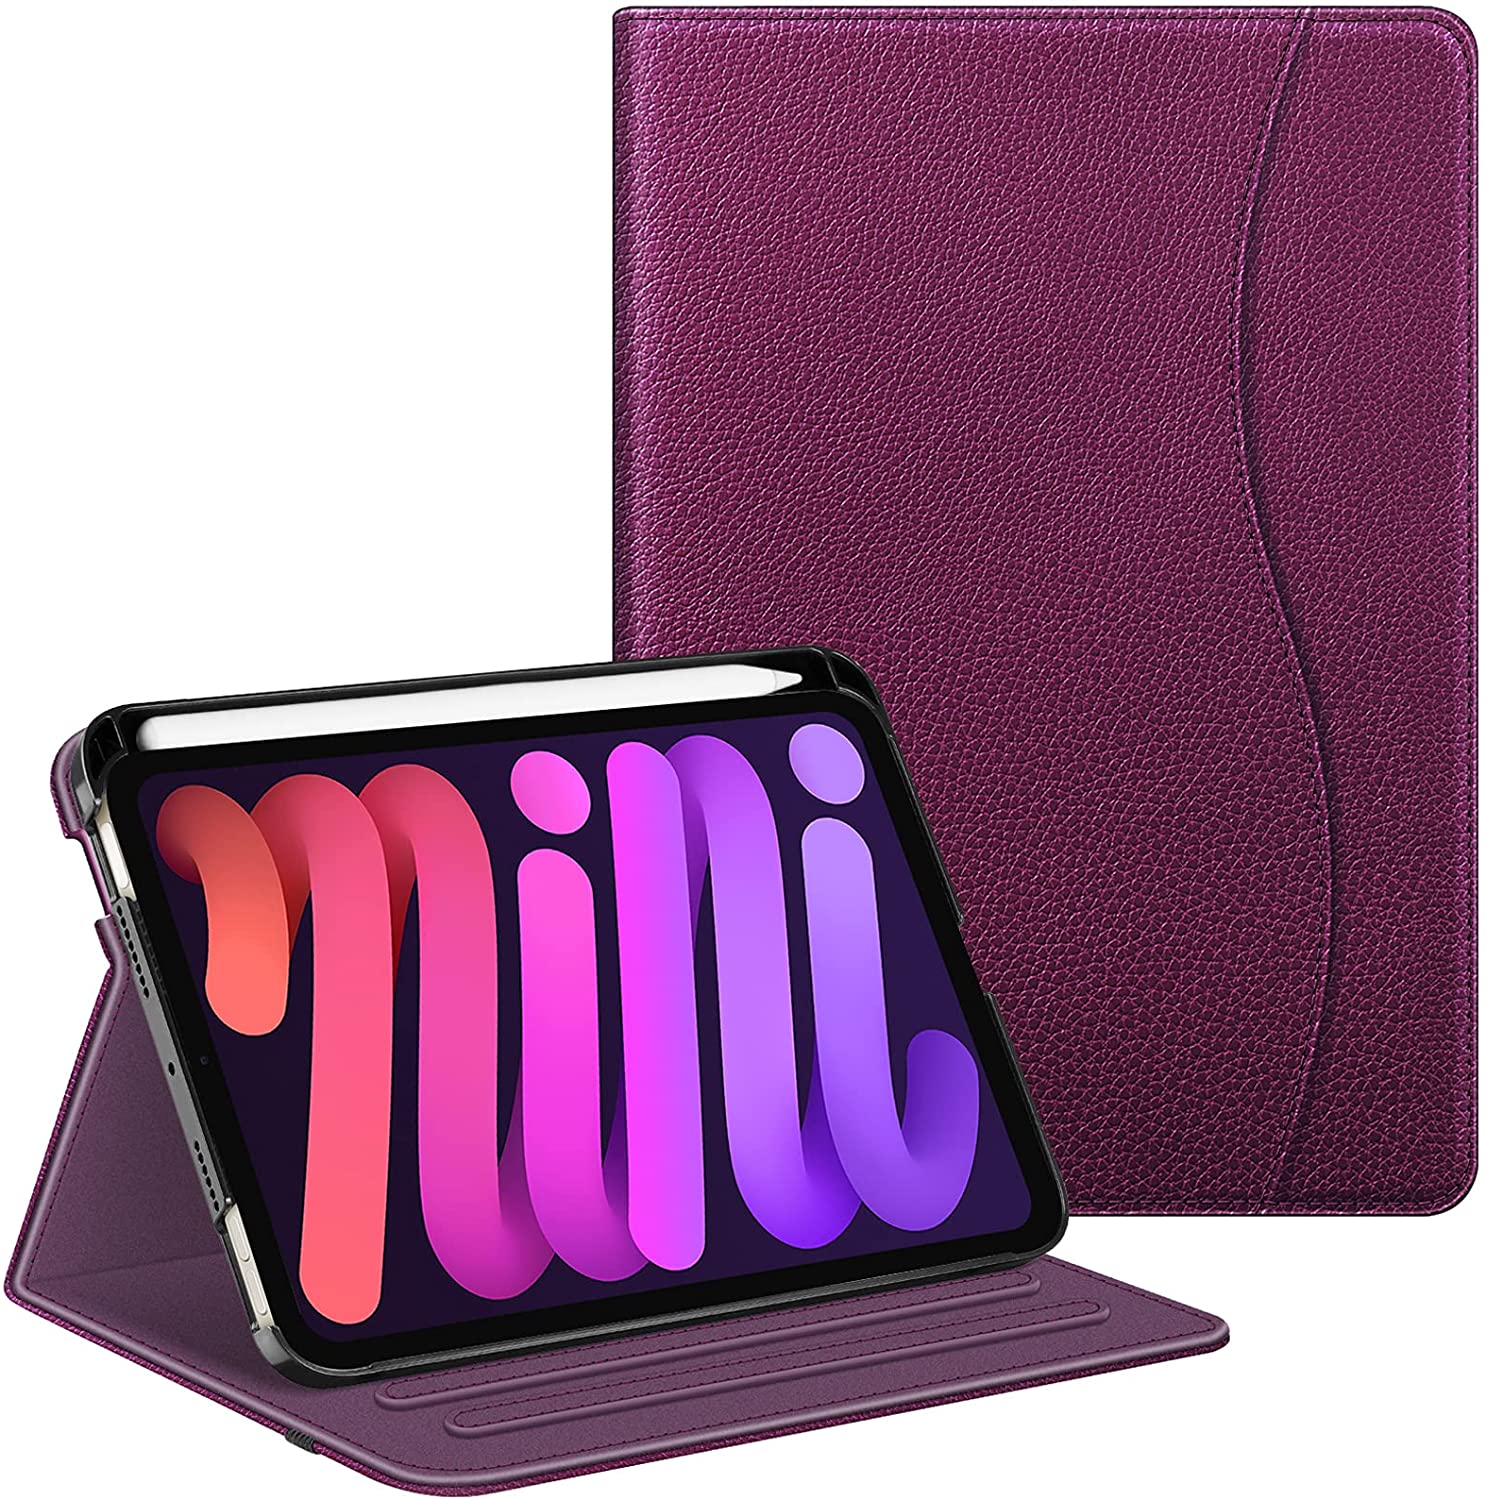 Best Cases for iPad Mini